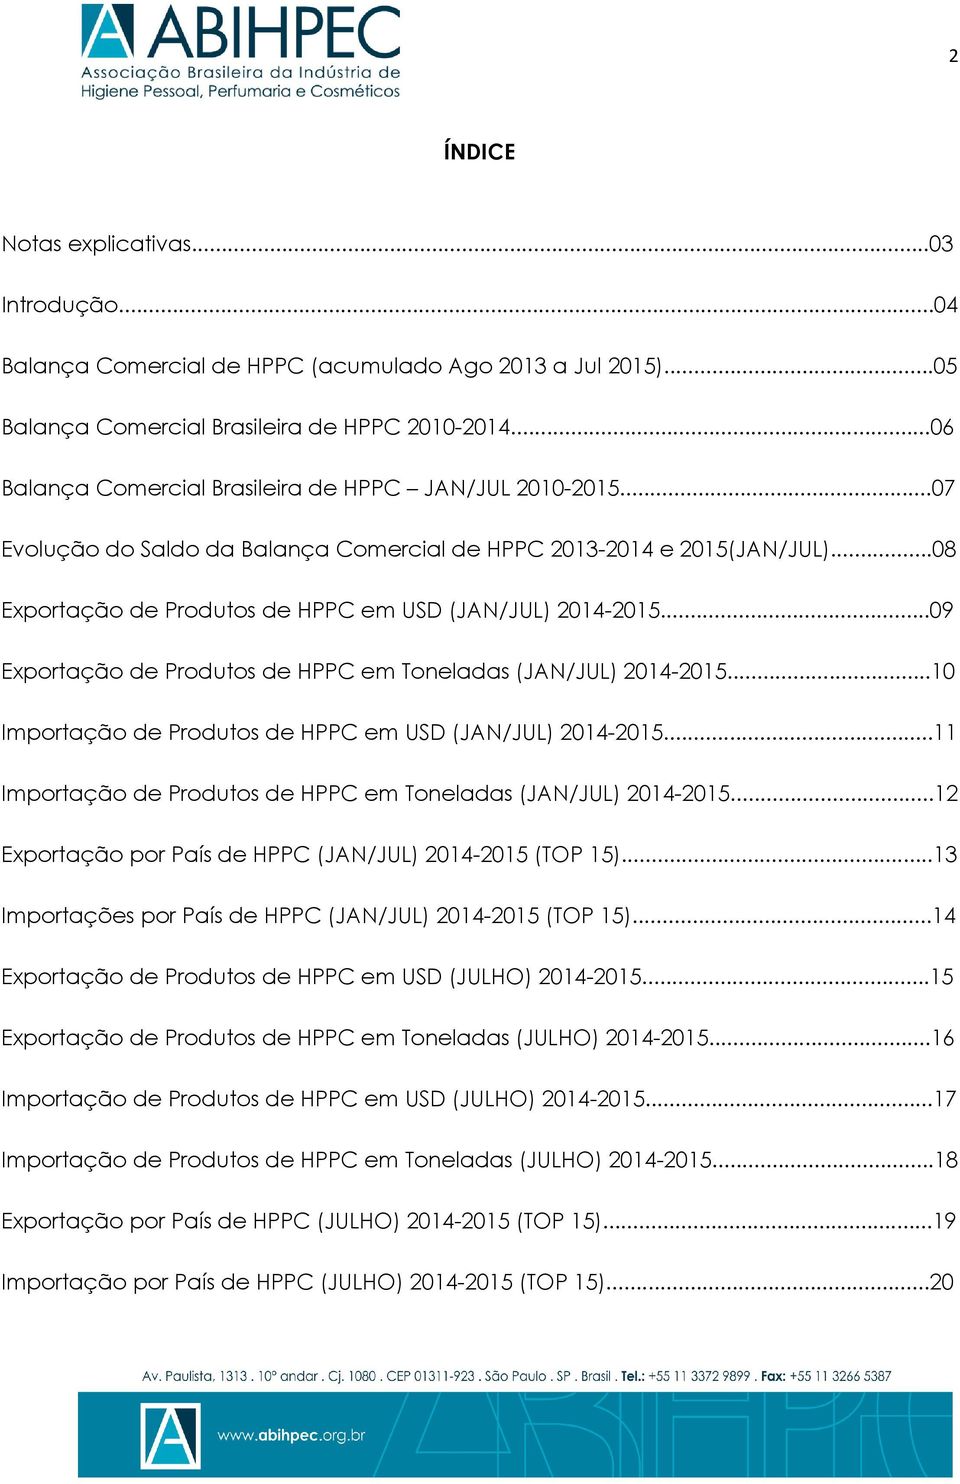 ..09 Exportação de Produtos de HPPC em Toneladas (JAN/JUL) 2014-2015...10 Importação de Produtos de HPPC em USD (JAN/JUL) 2014-2015...11 Importação de Produtos de HPPC em Toneladas (JAN/JUL) 2014-2015.